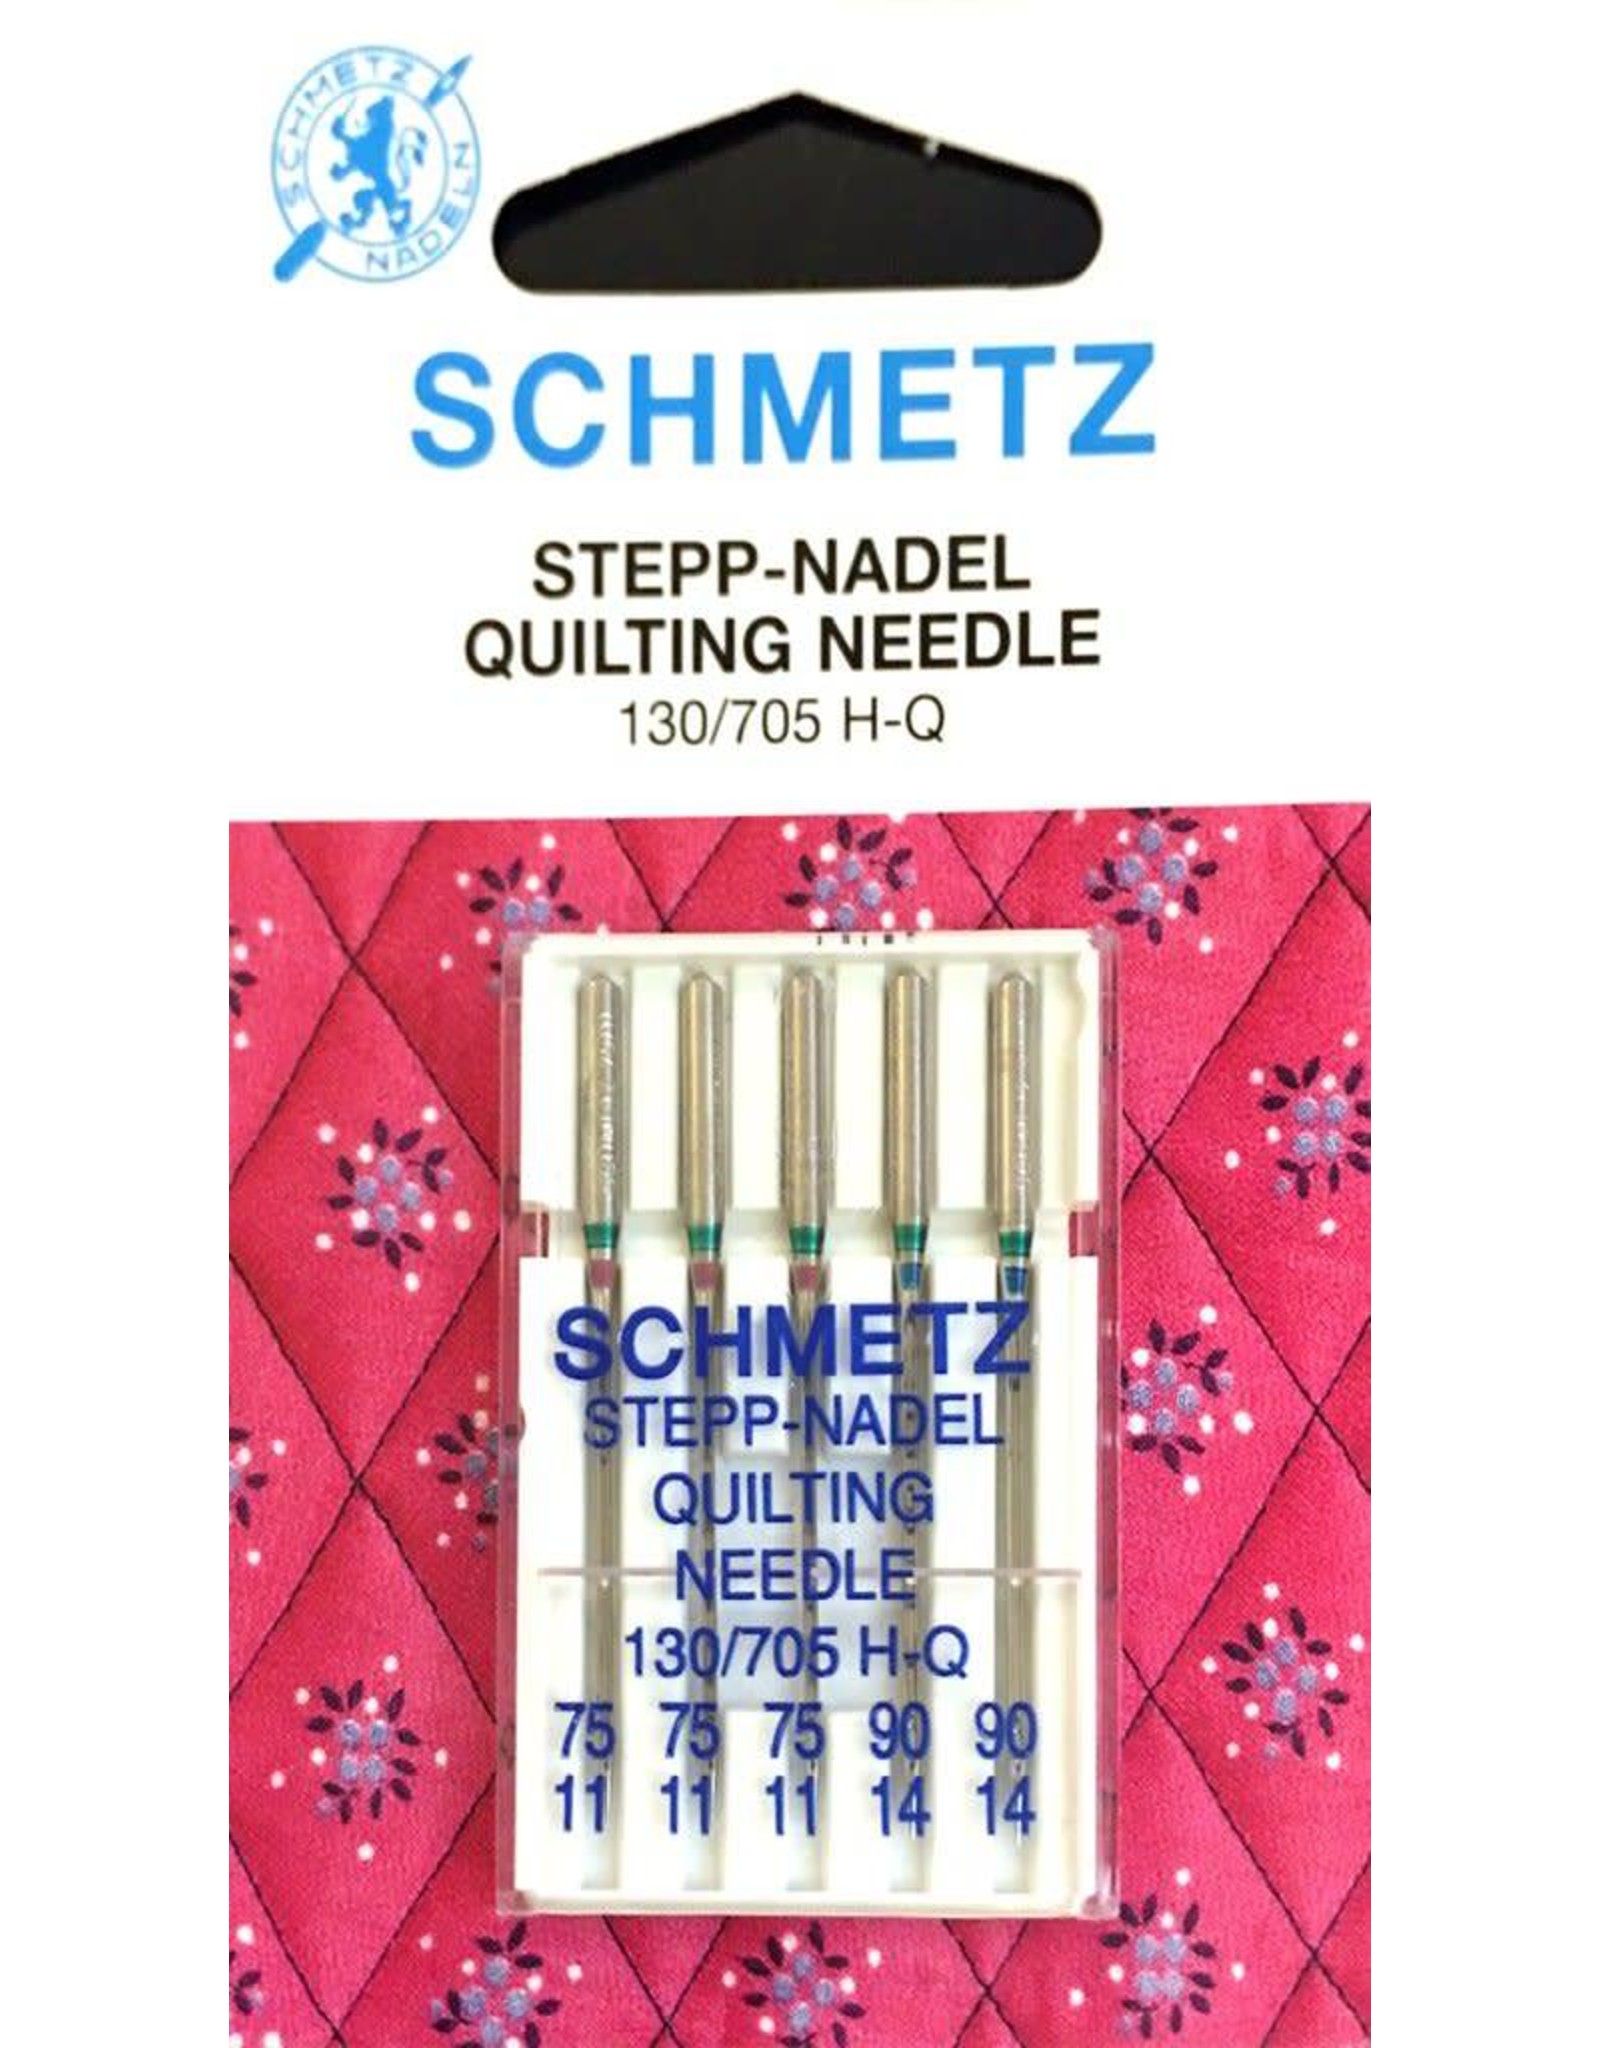 Schmetz Quilting Needle - 130/705 H-Q - 75/90 ass.